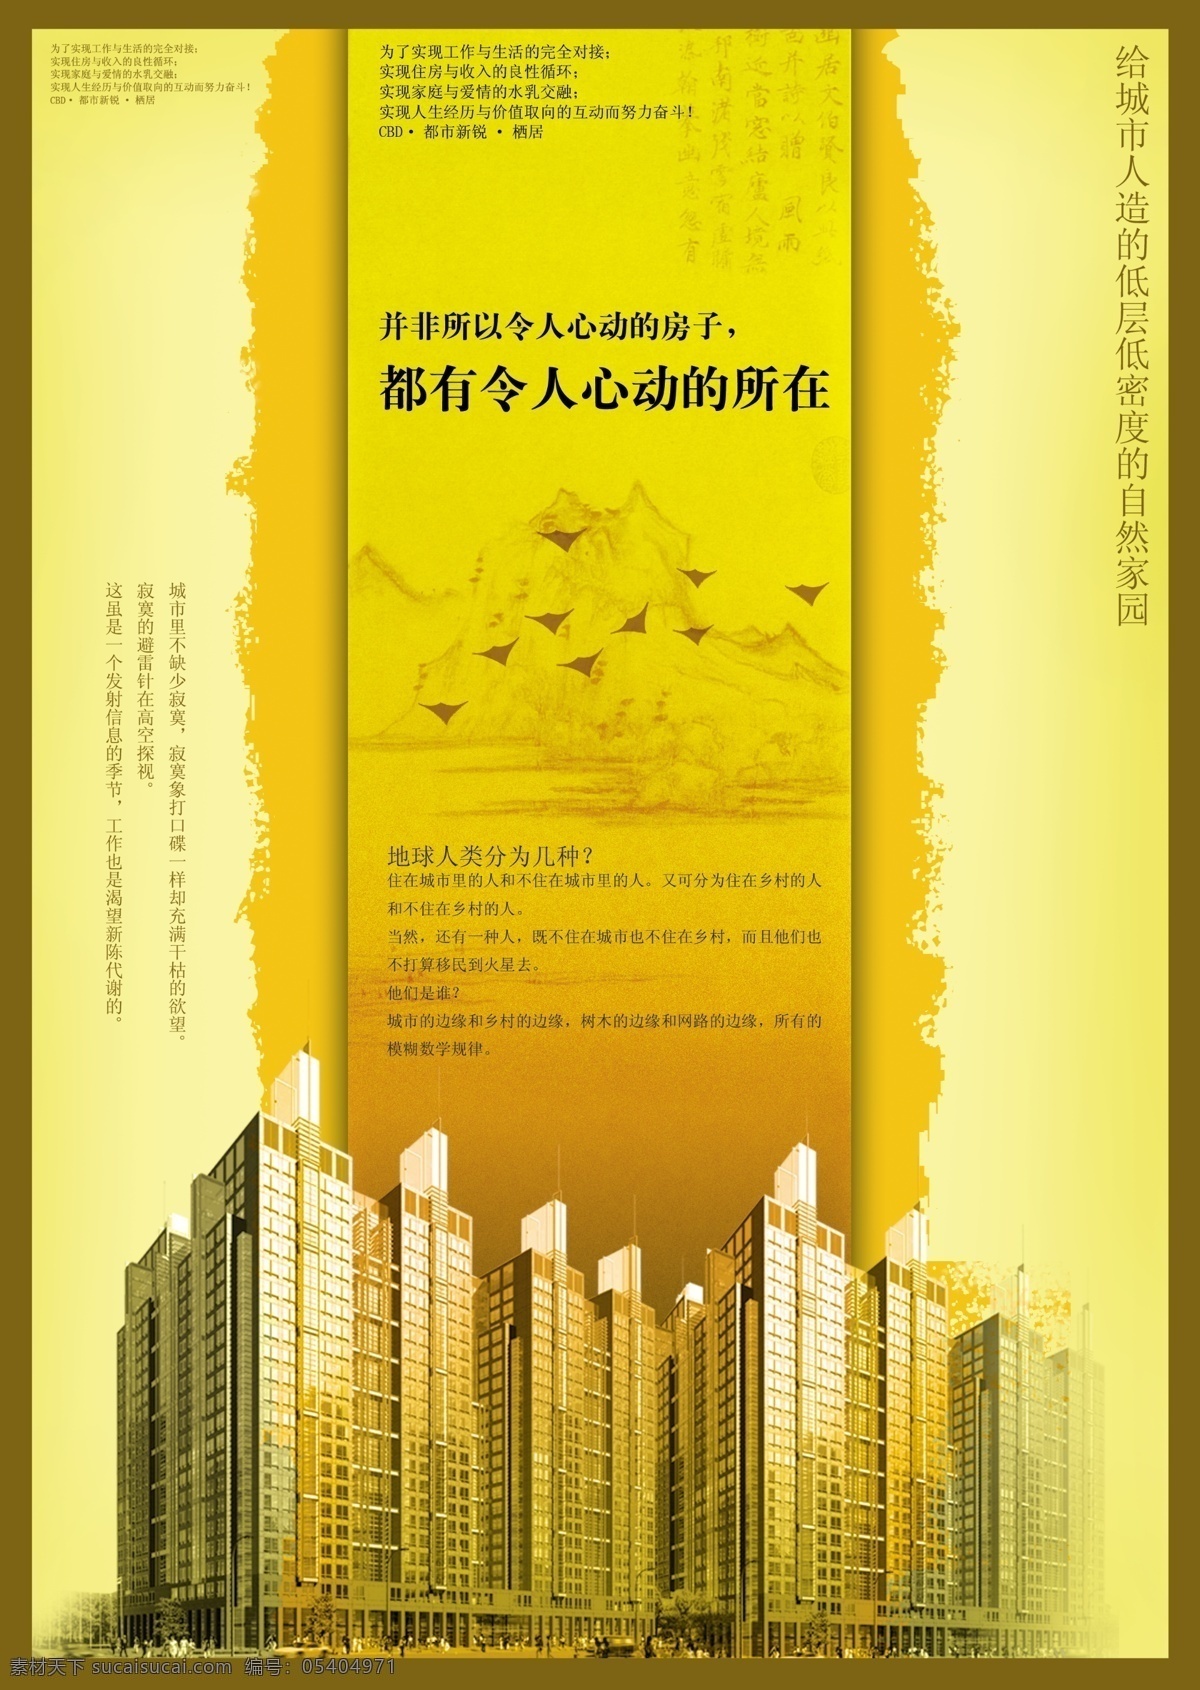 创意 房产 尊贵 金黄色 文案 宣传海报